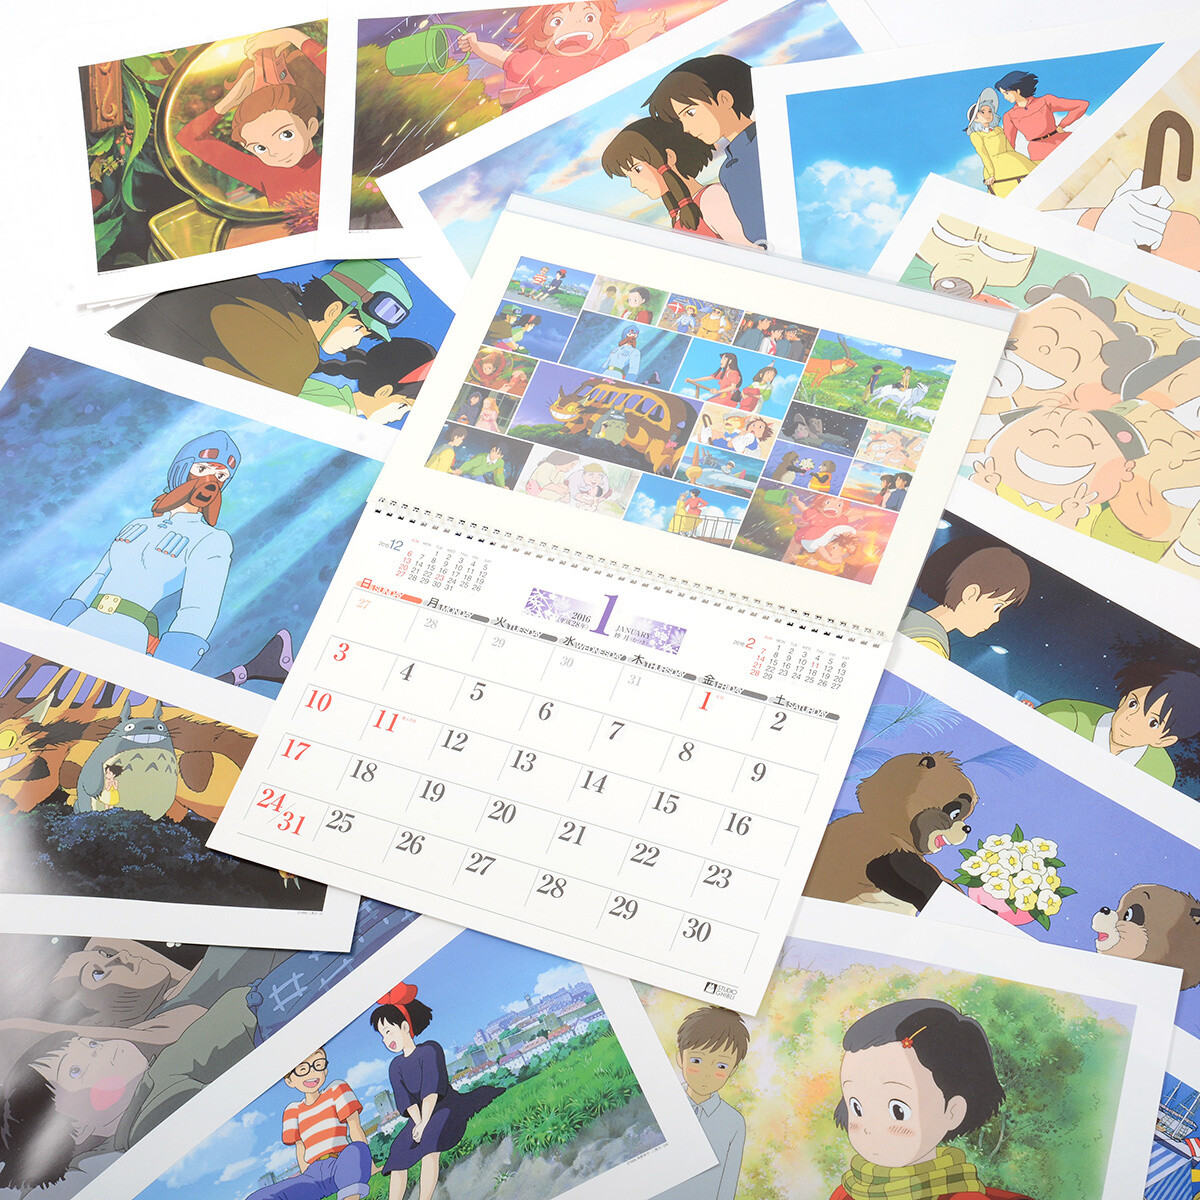 Studio Ghibli Art Frame 2016 Calendar Tokyo Otaku Mode Shop